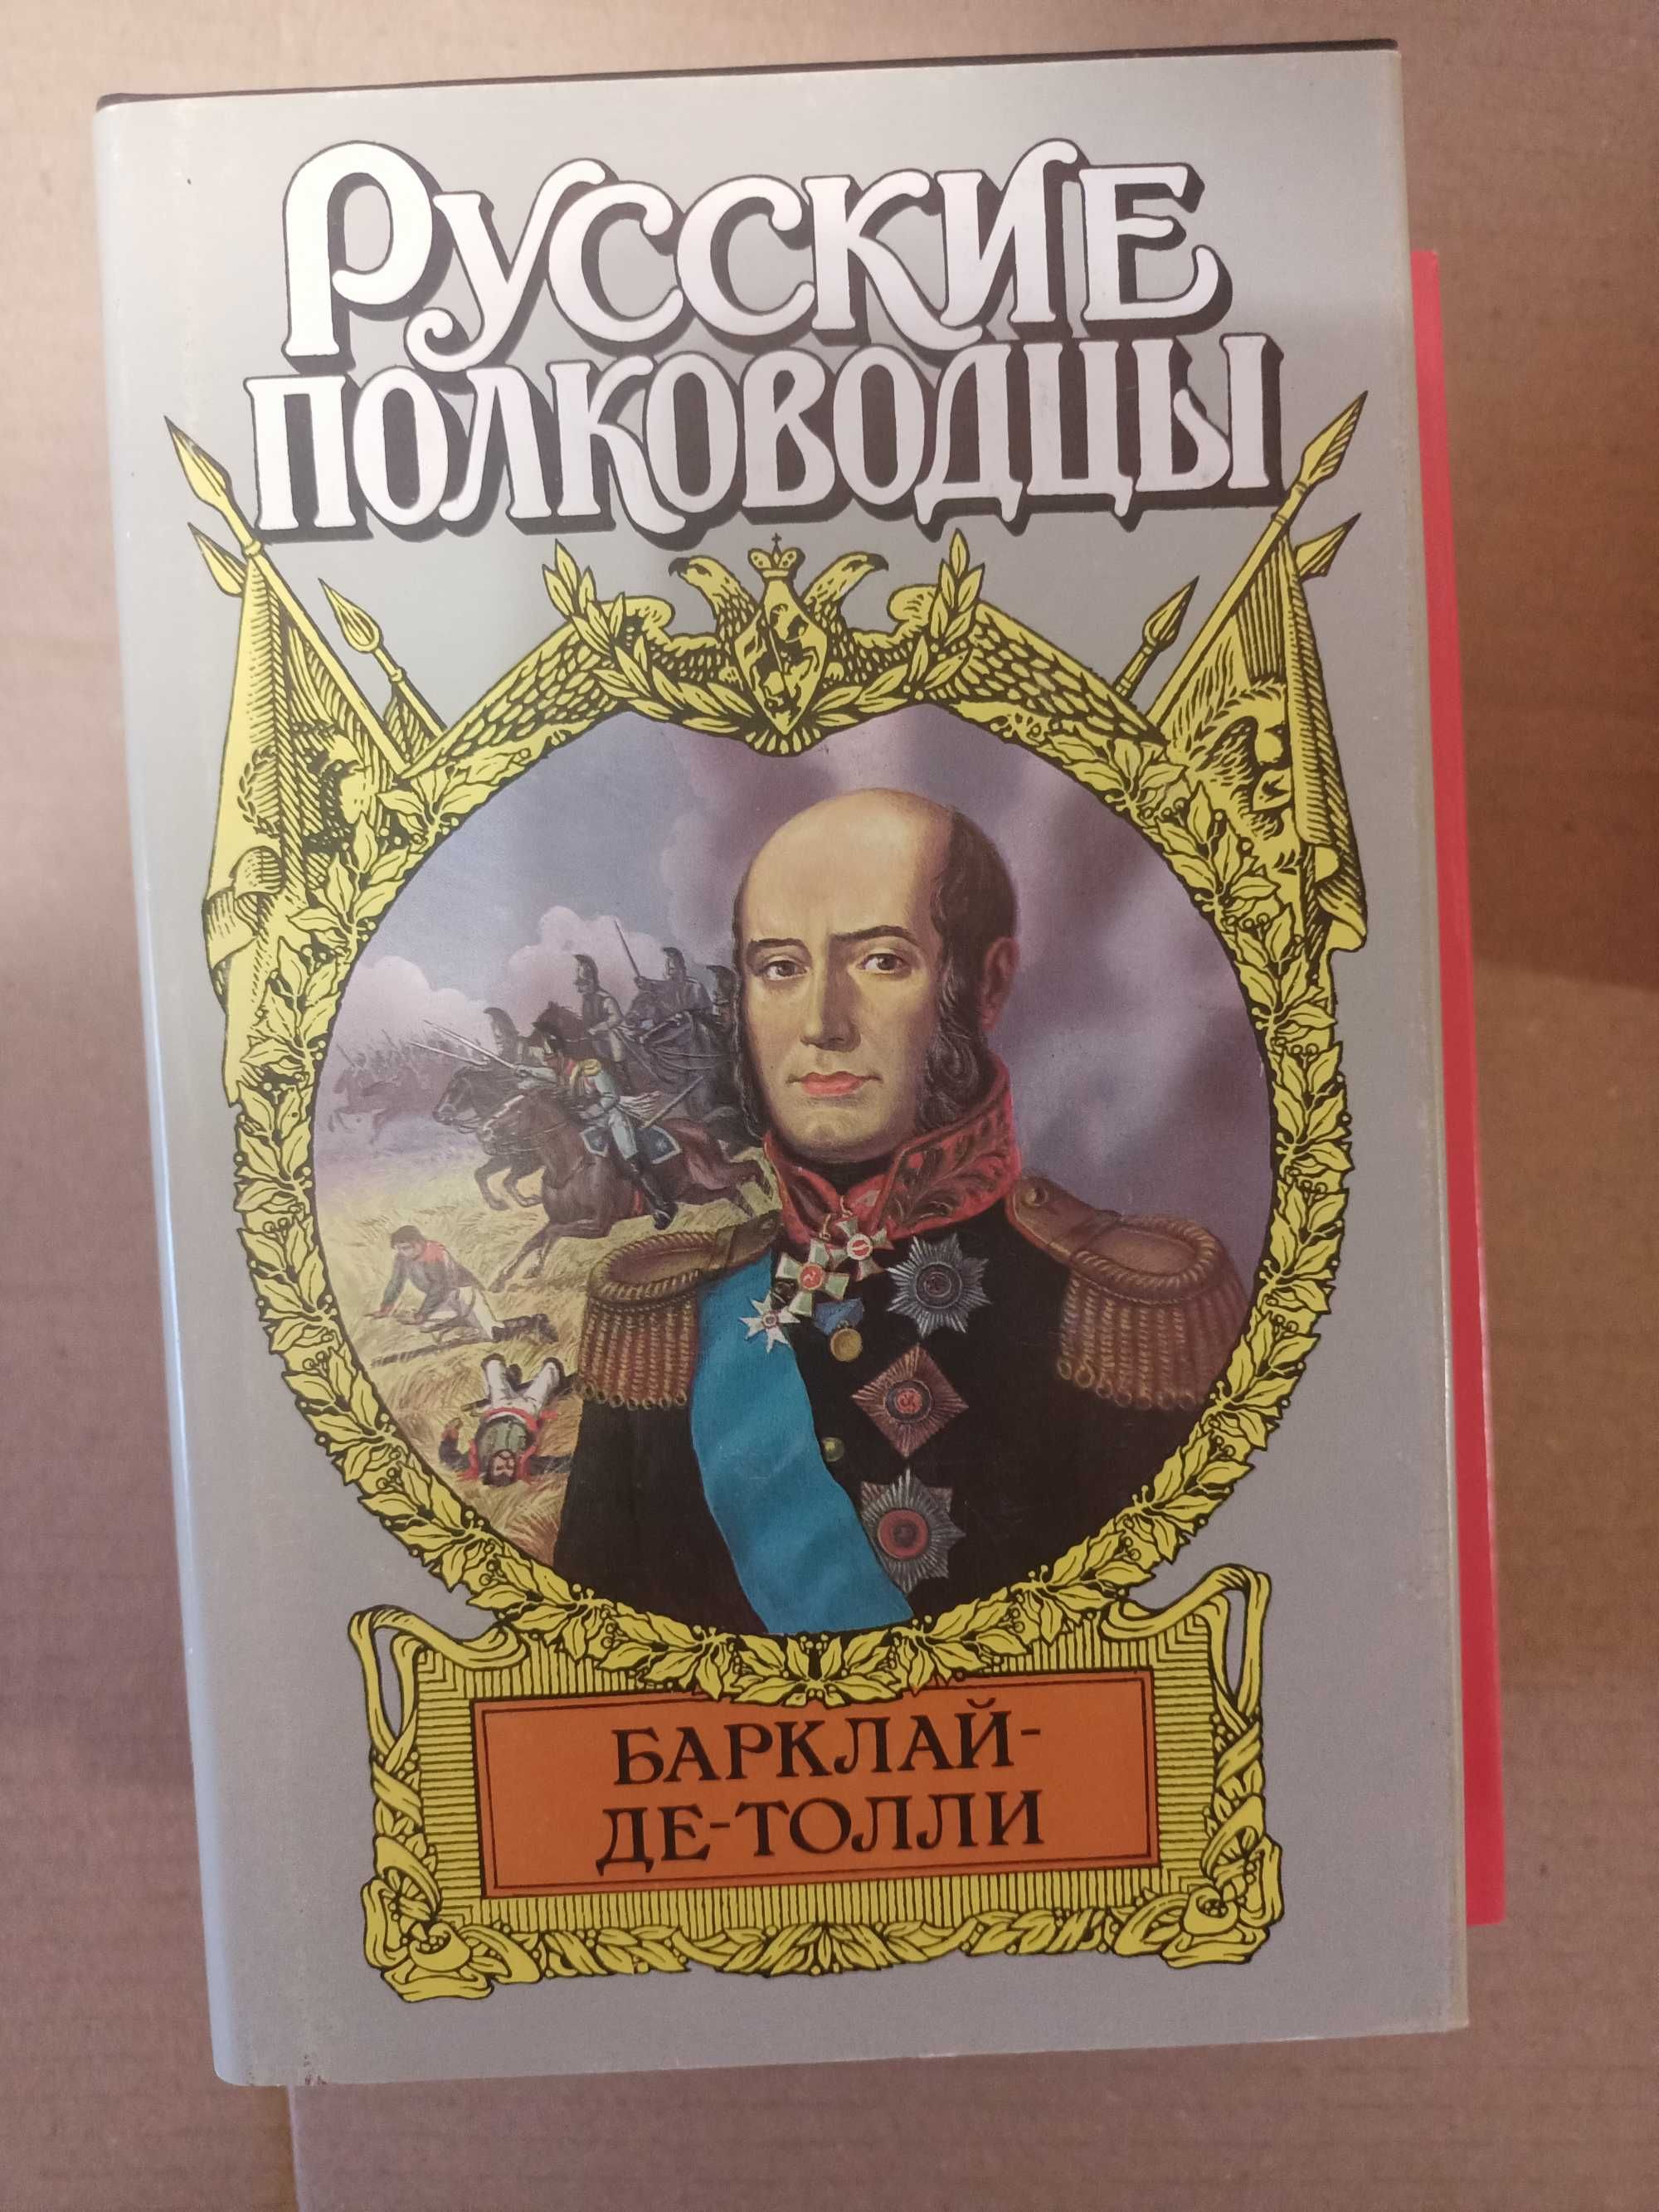 Продаю серію книг "Сподвижники и фавориты"; "Во славу земли рус" и др.